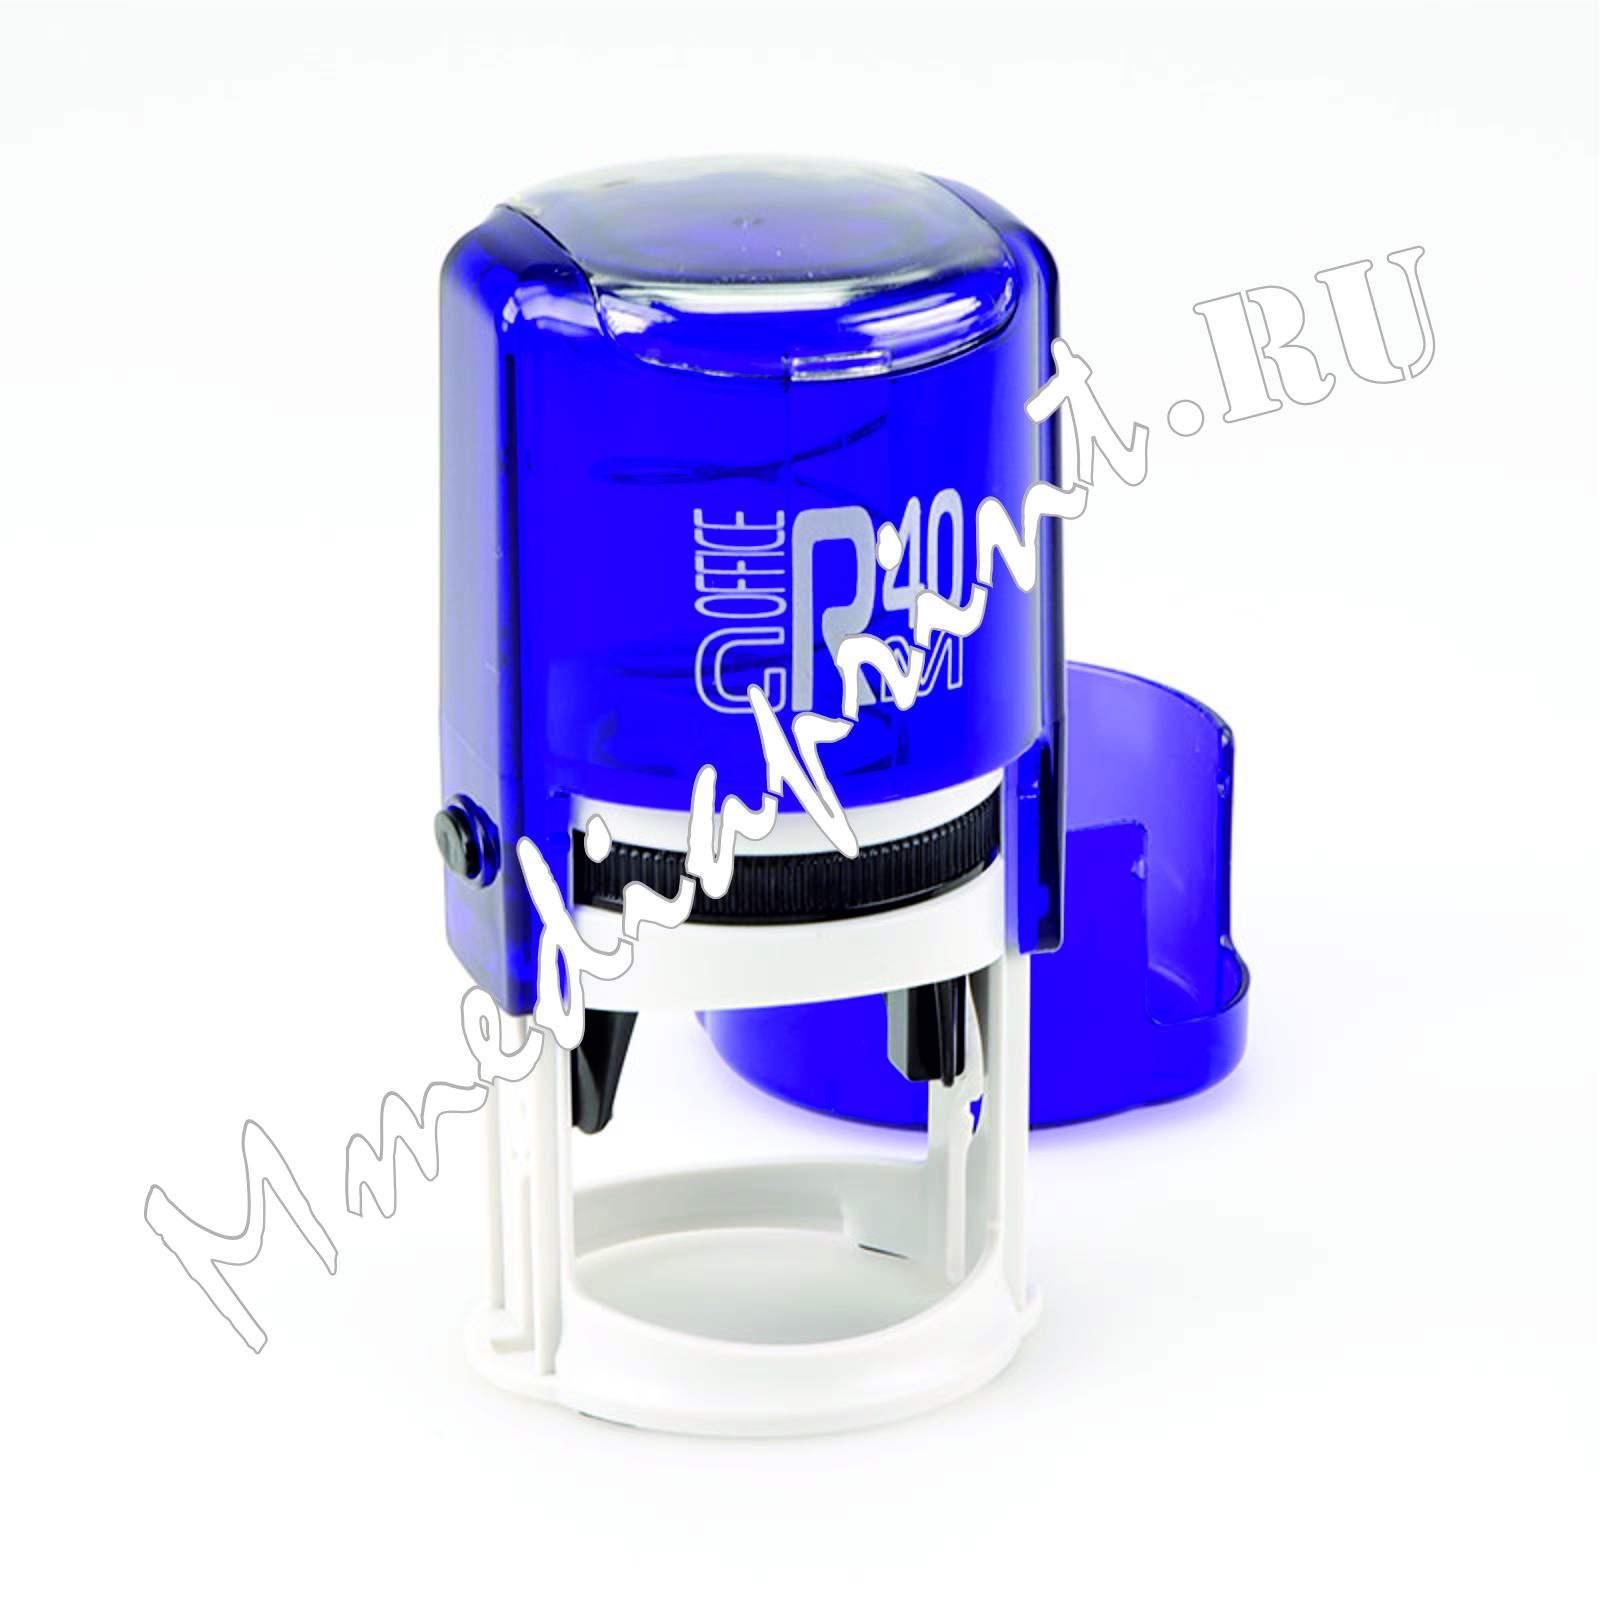 ММедиапринт-автоматическая оснастка для печати 40 мм Индиго (синяя) с защитным боксом серии Offis.